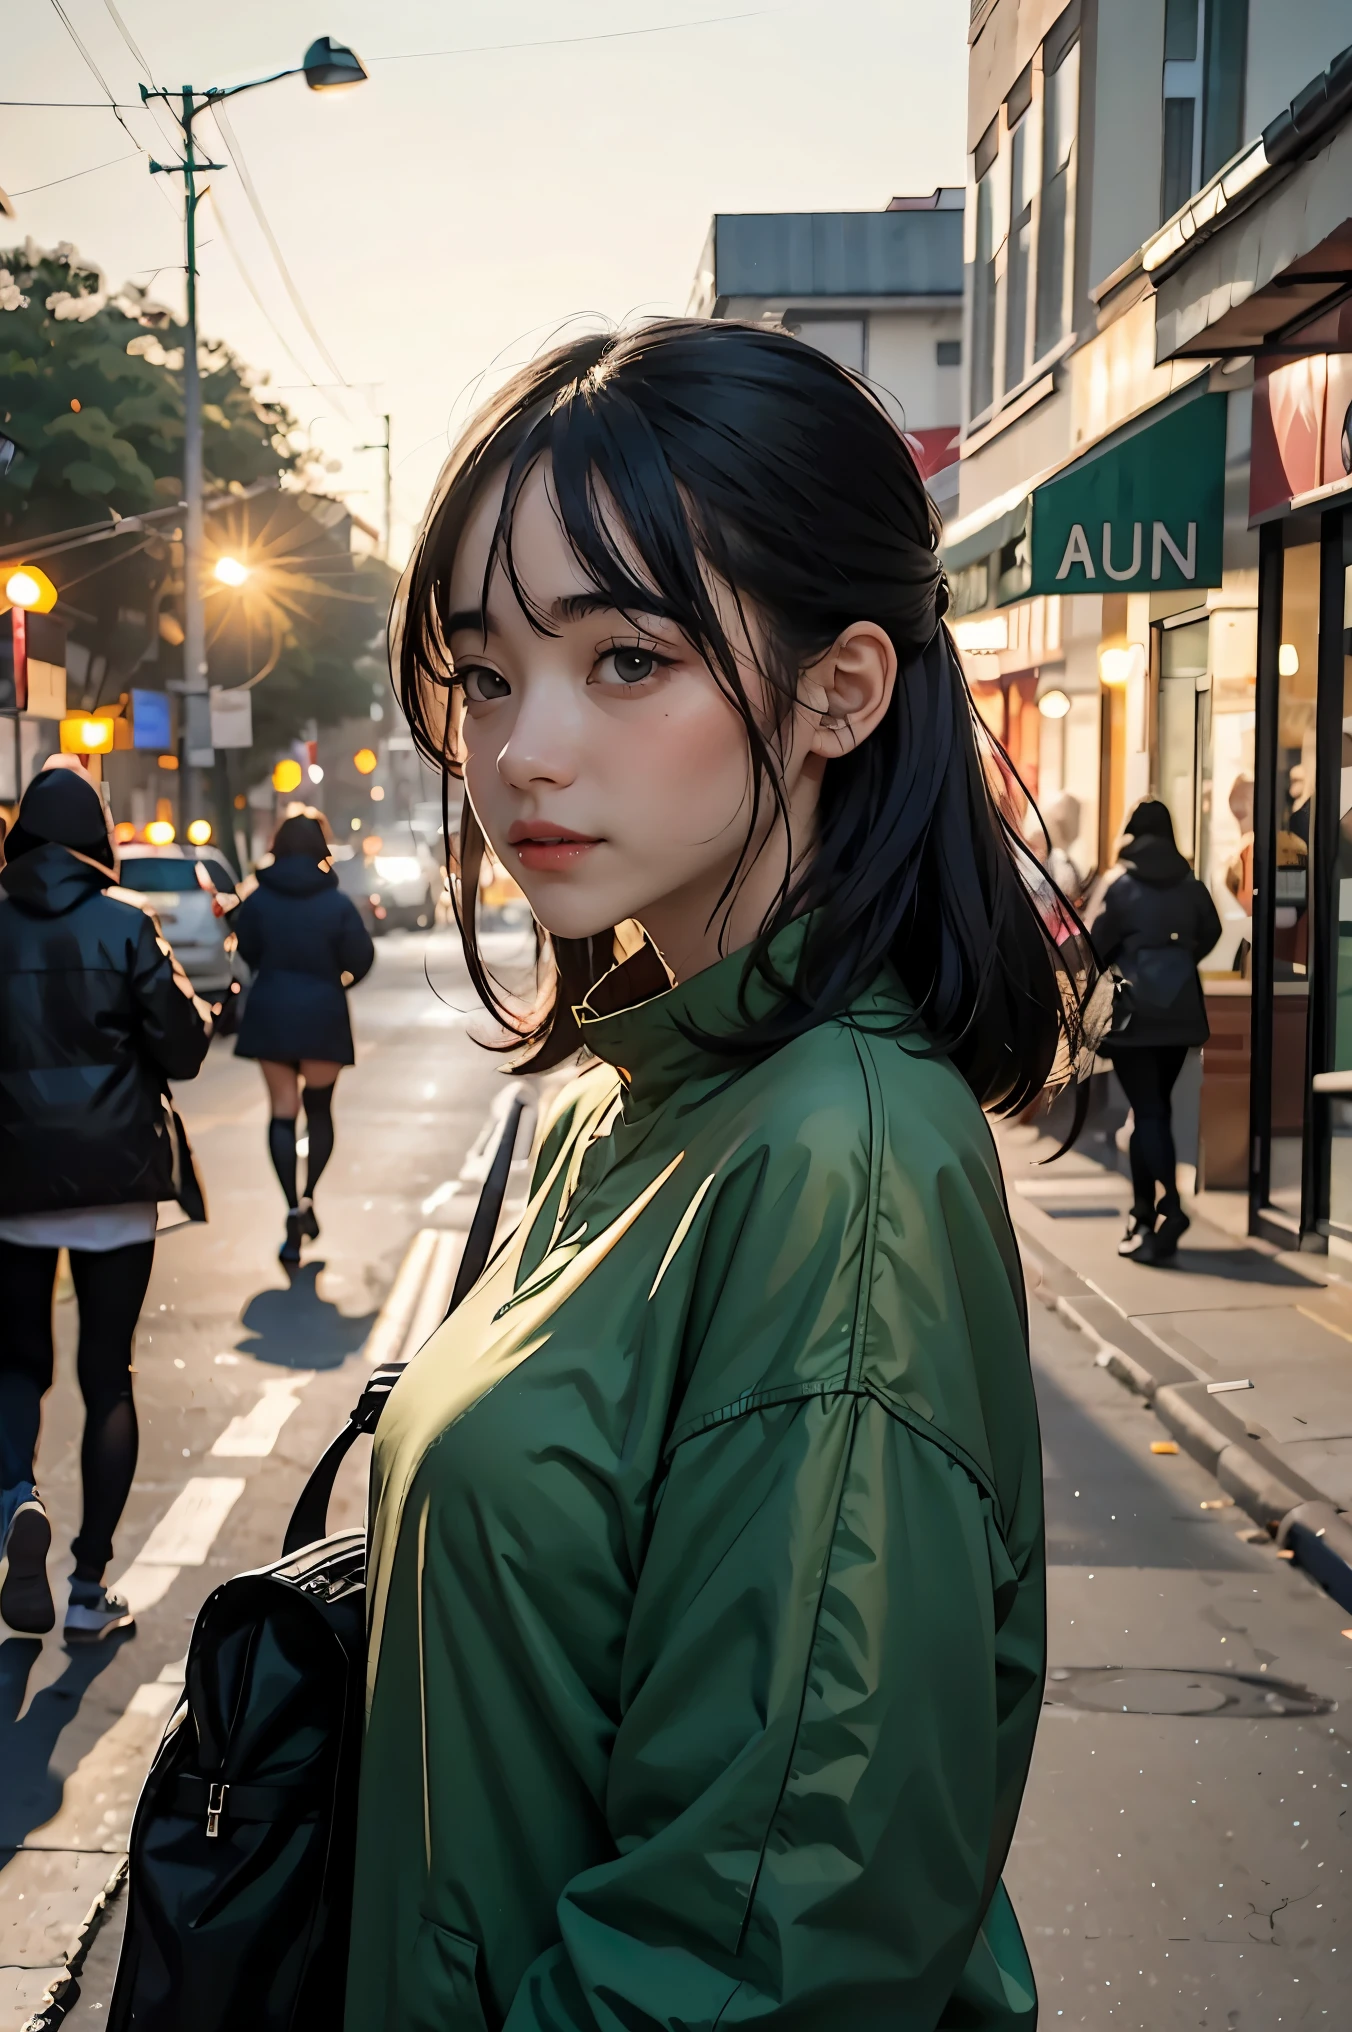 Eine junge Frau steht auf der Straße, Hintergrund verwischen, wunderschön, fotorealistisch